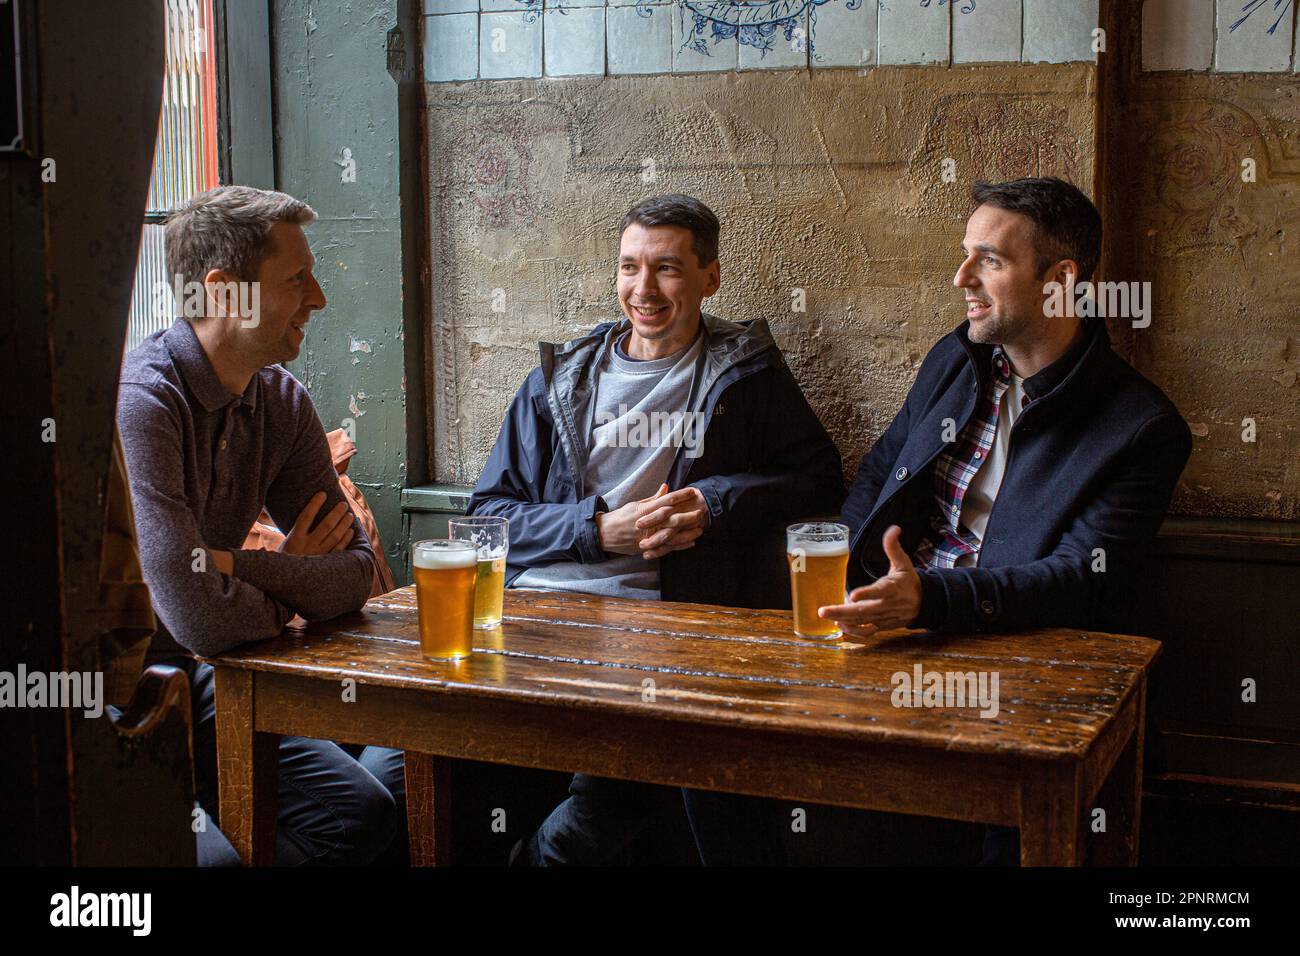 Des amis qui boivent de la bière au pub, The Holy Tavern, à Britton Street, Clerkenwell, Londres, Angleterre, Royaume-Uni. Banque D'Images